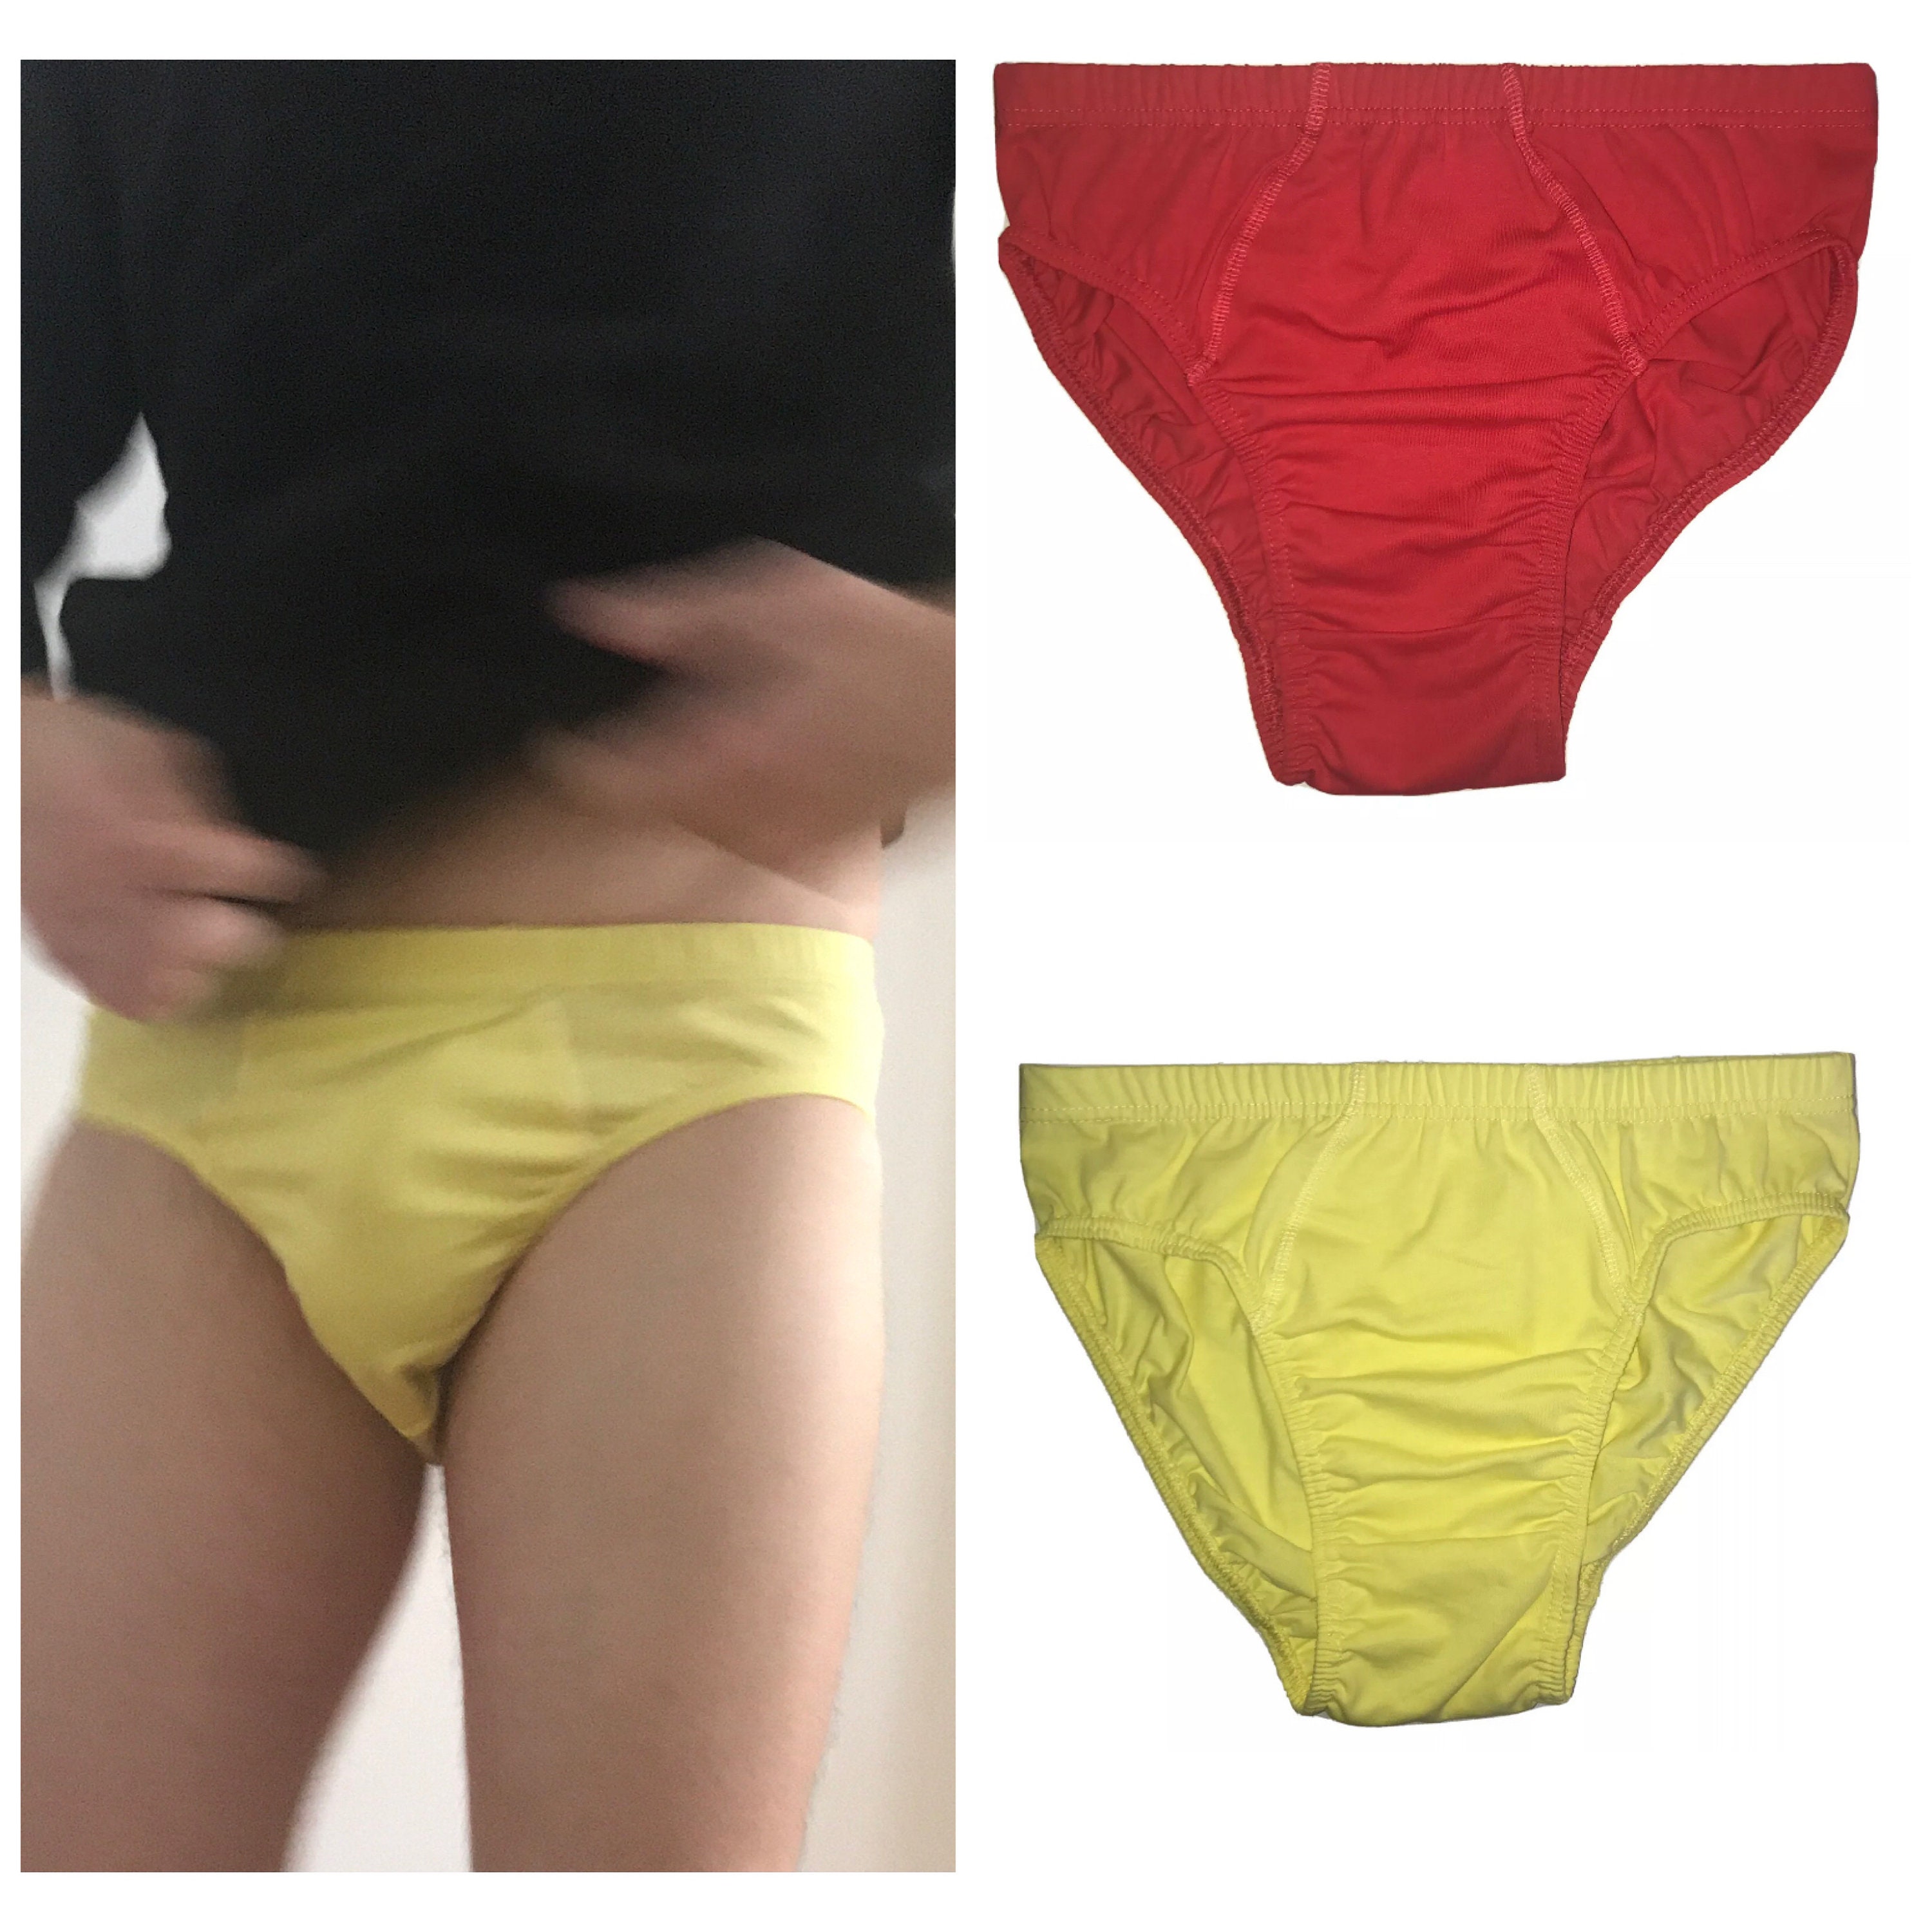 Cleocotton, Men's underwear (SLIM FIT), Brief underwear